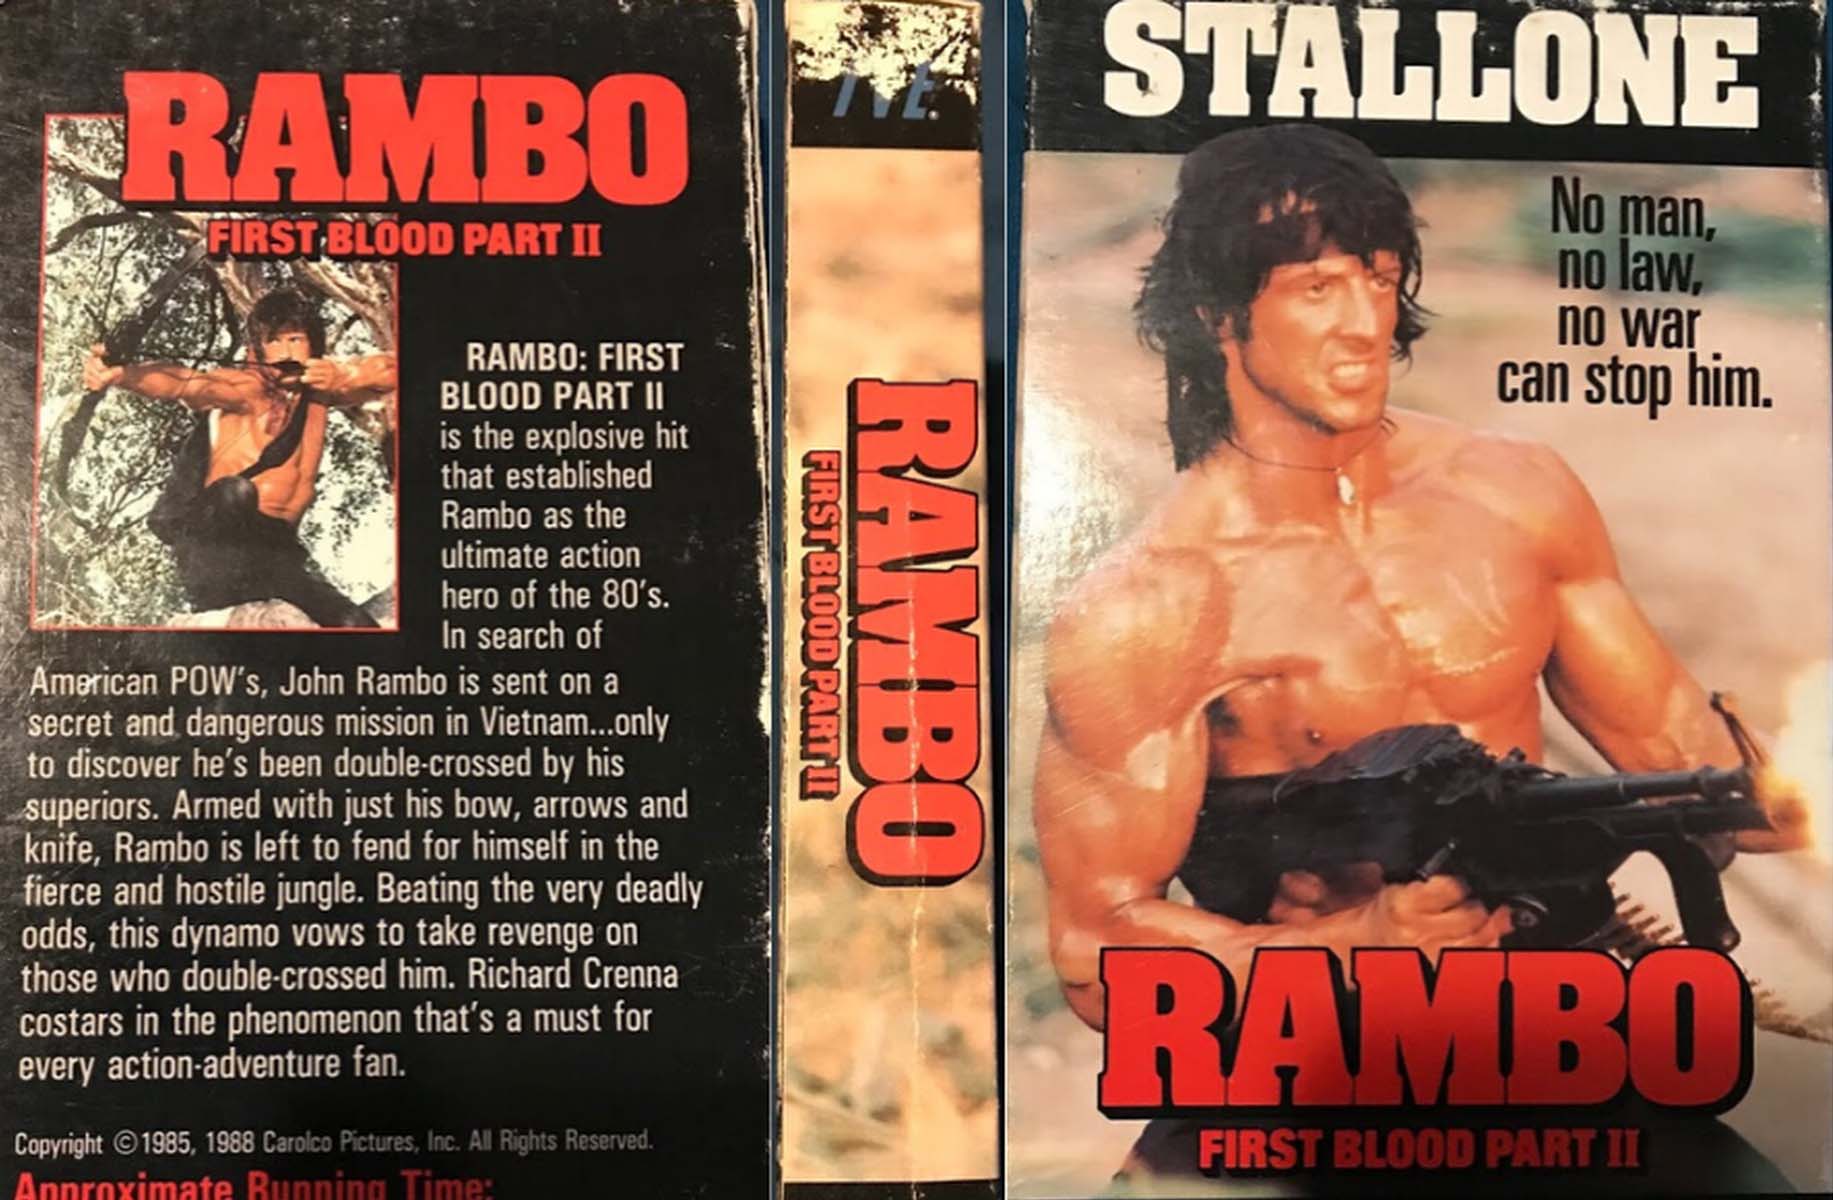 Játszd újra, Rambo: bár 15 éve eltemették, a VHS nem halt meg, sőt egyenesen pótolhatatlan